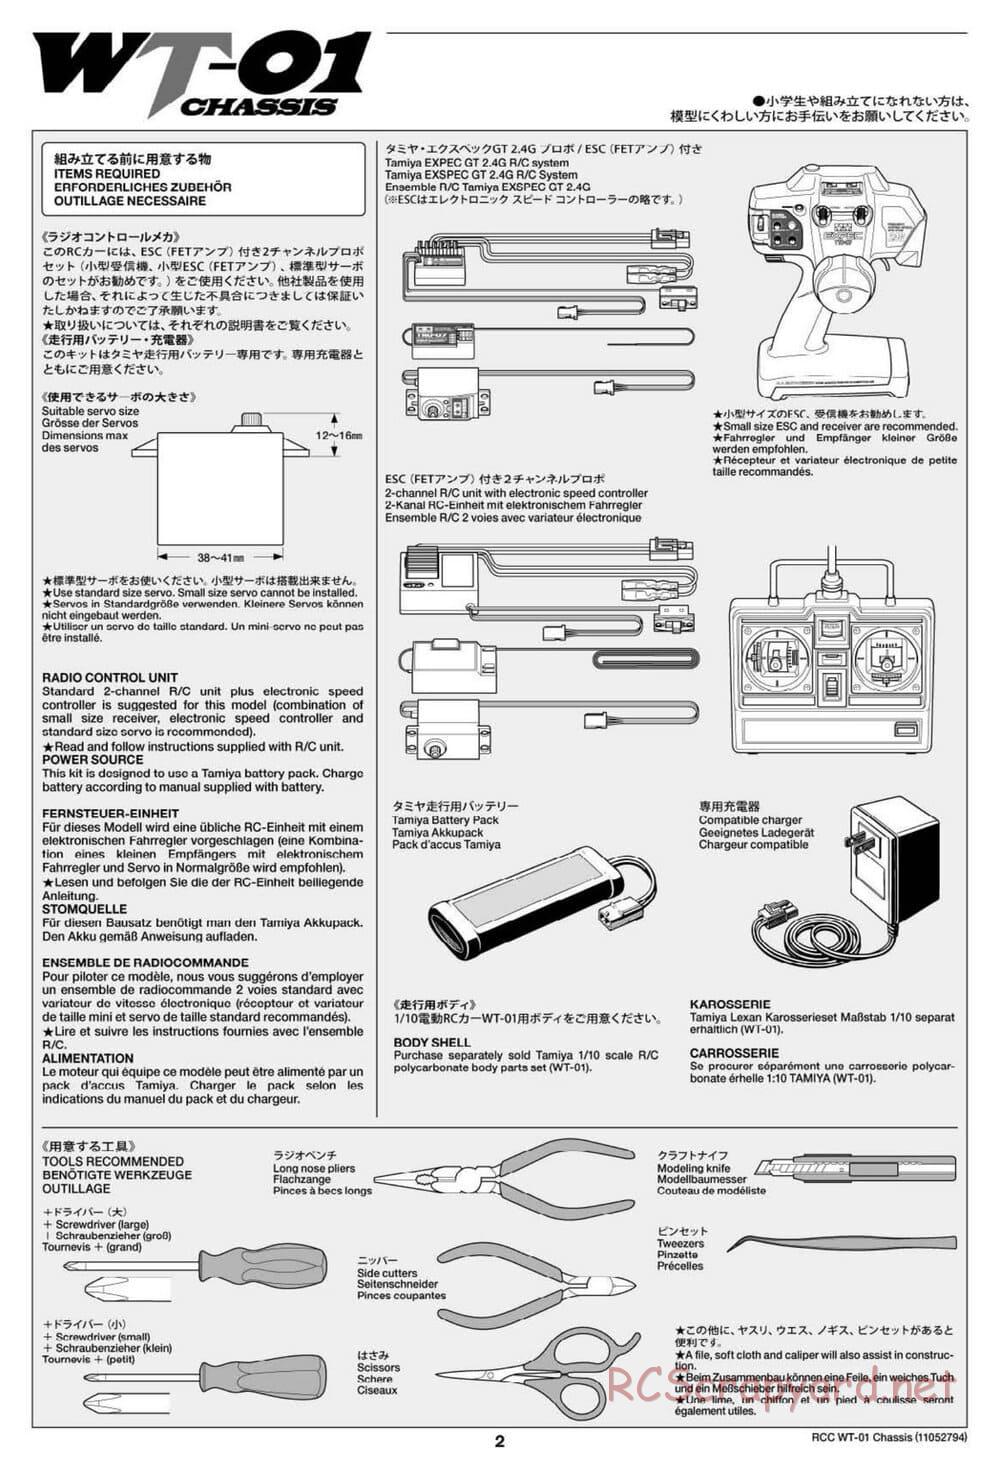 Tamiya - WT-01 Chassis - Manual - Page 2